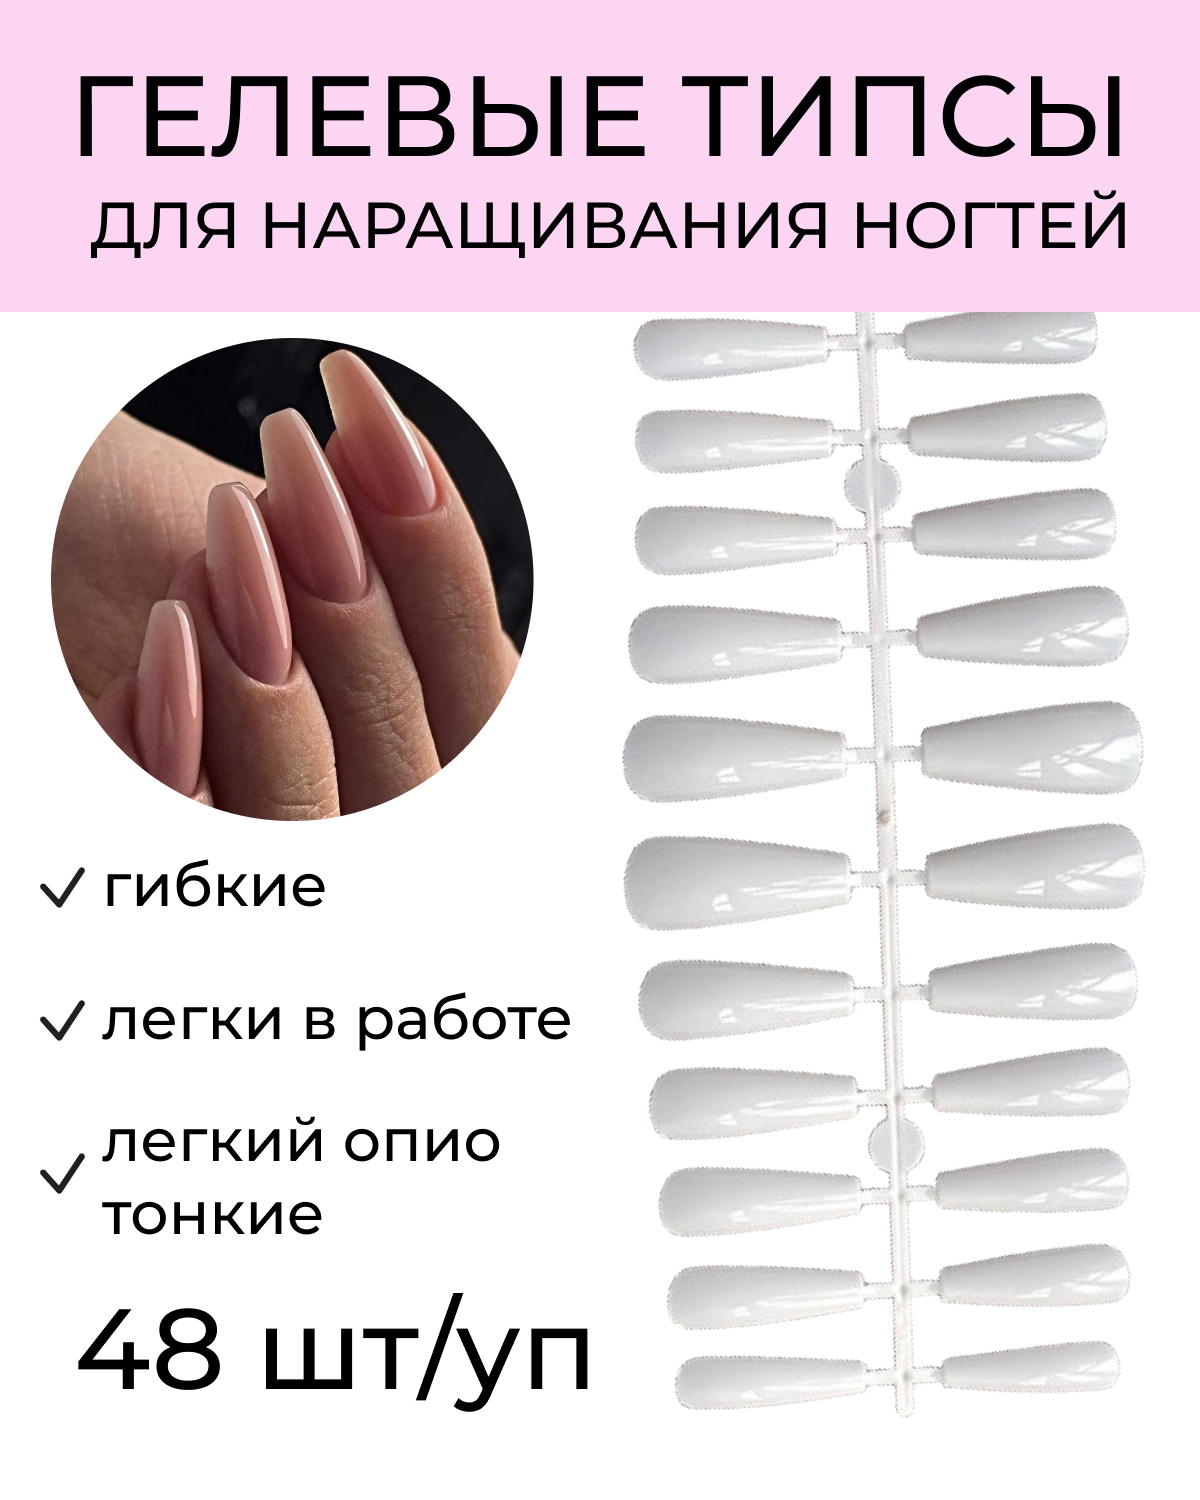 Длины ногтей для наращивания по номерам